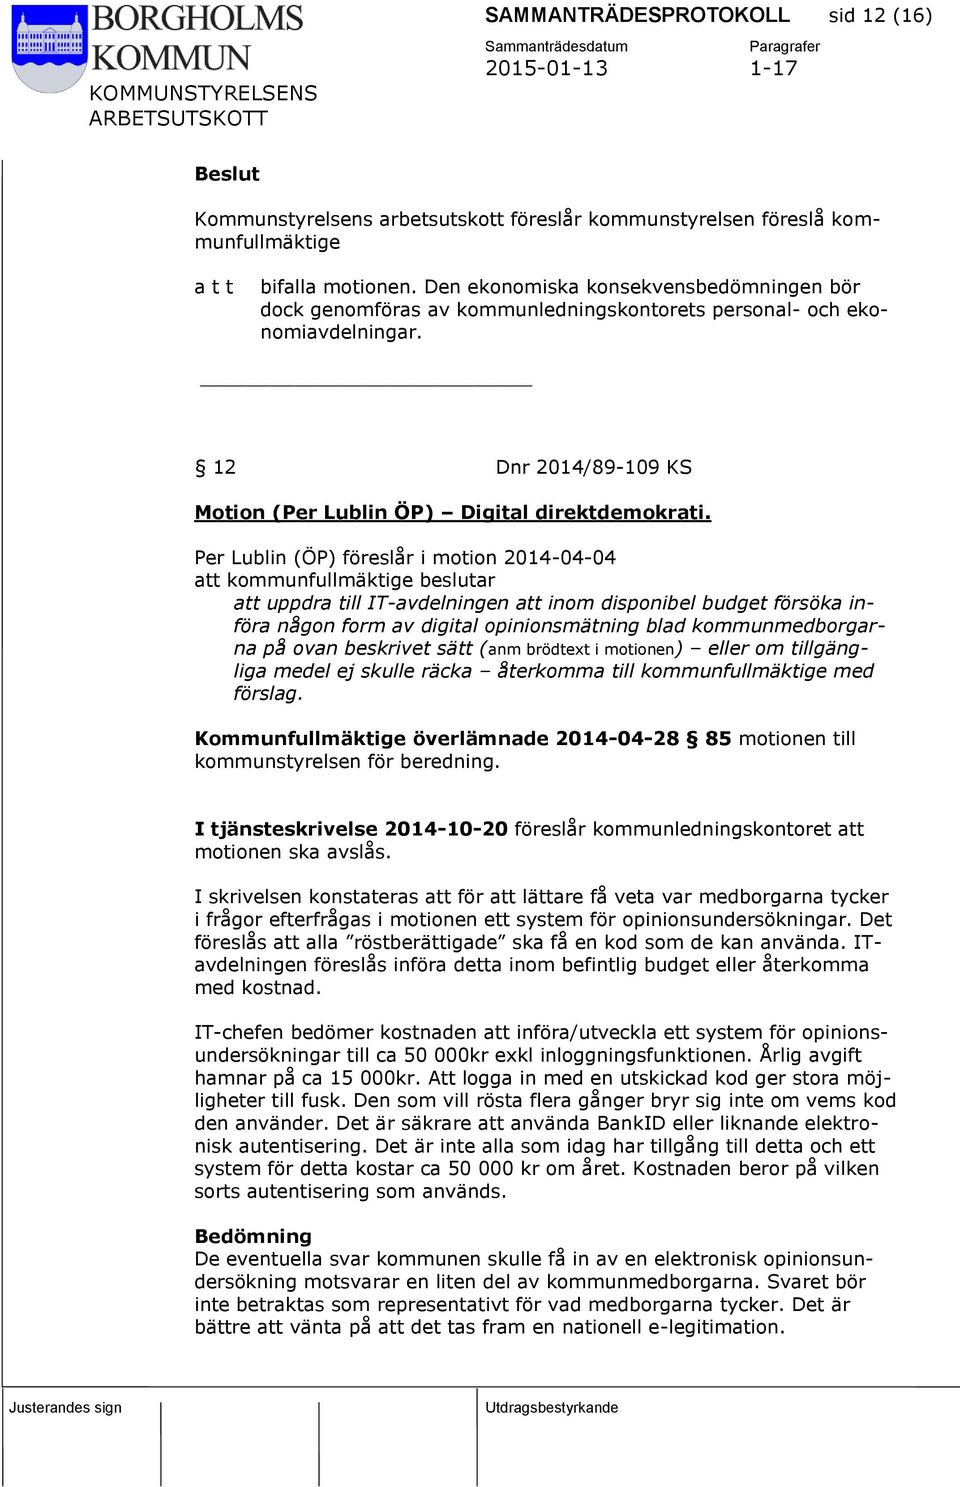 Per Lublin (ÖP) föreslår i motion 2014-04-04 att kommunfullmäktige beslutar att uppdra till IT-avdelningen att inom disponibel budget försöka införa någon form av digital opinionsmätning blad